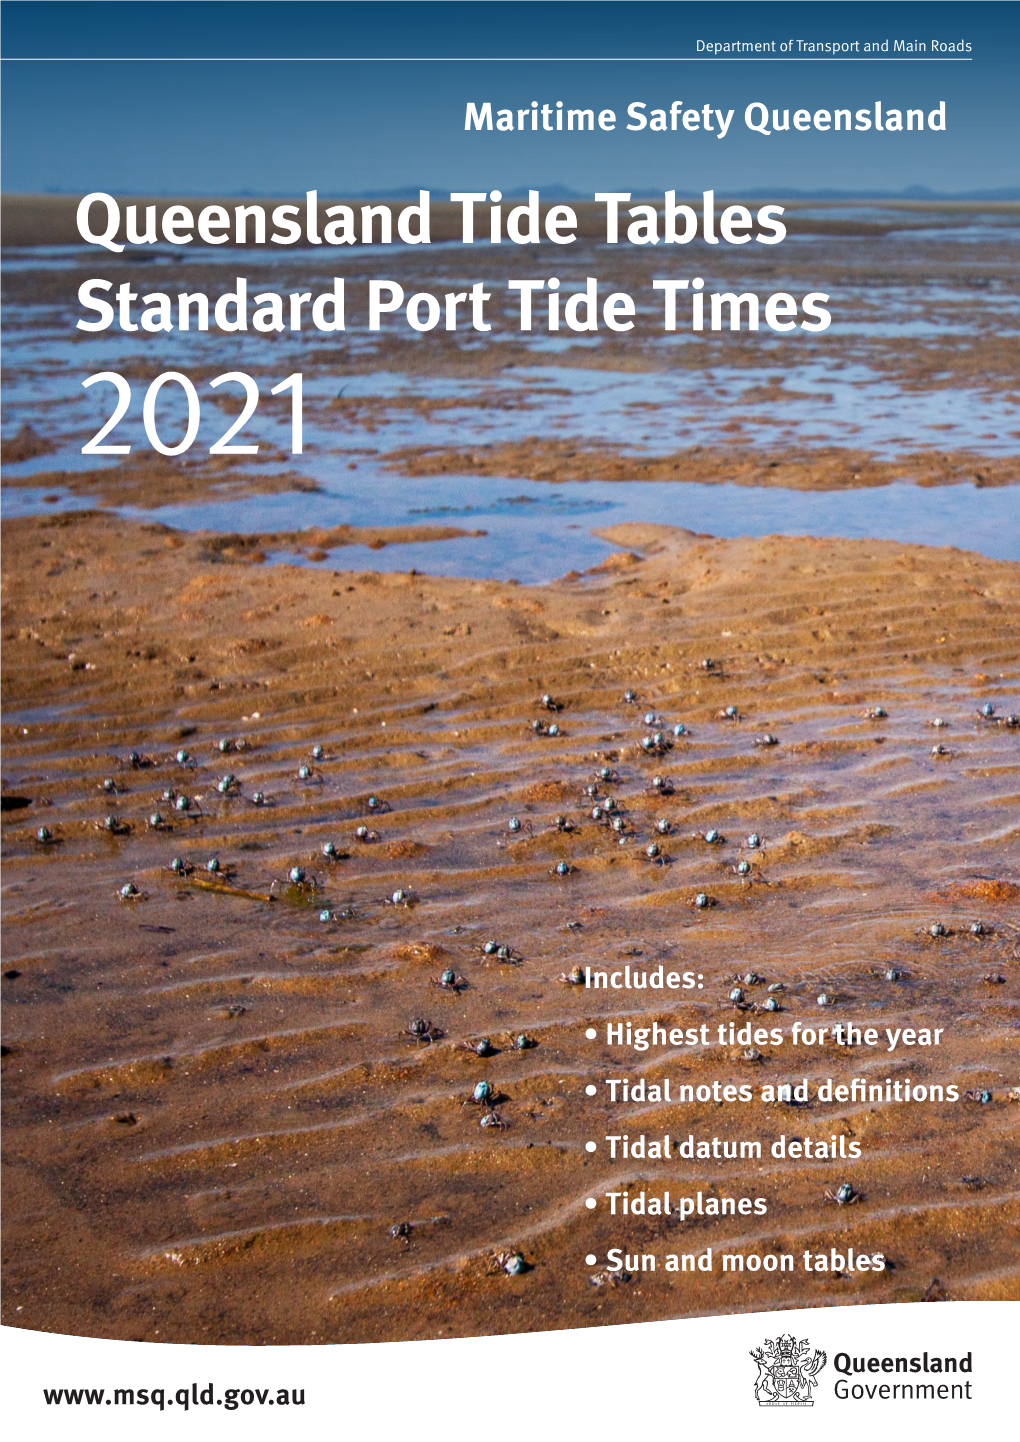 Queensland Tide Tables Standard Port Tide Times 2021